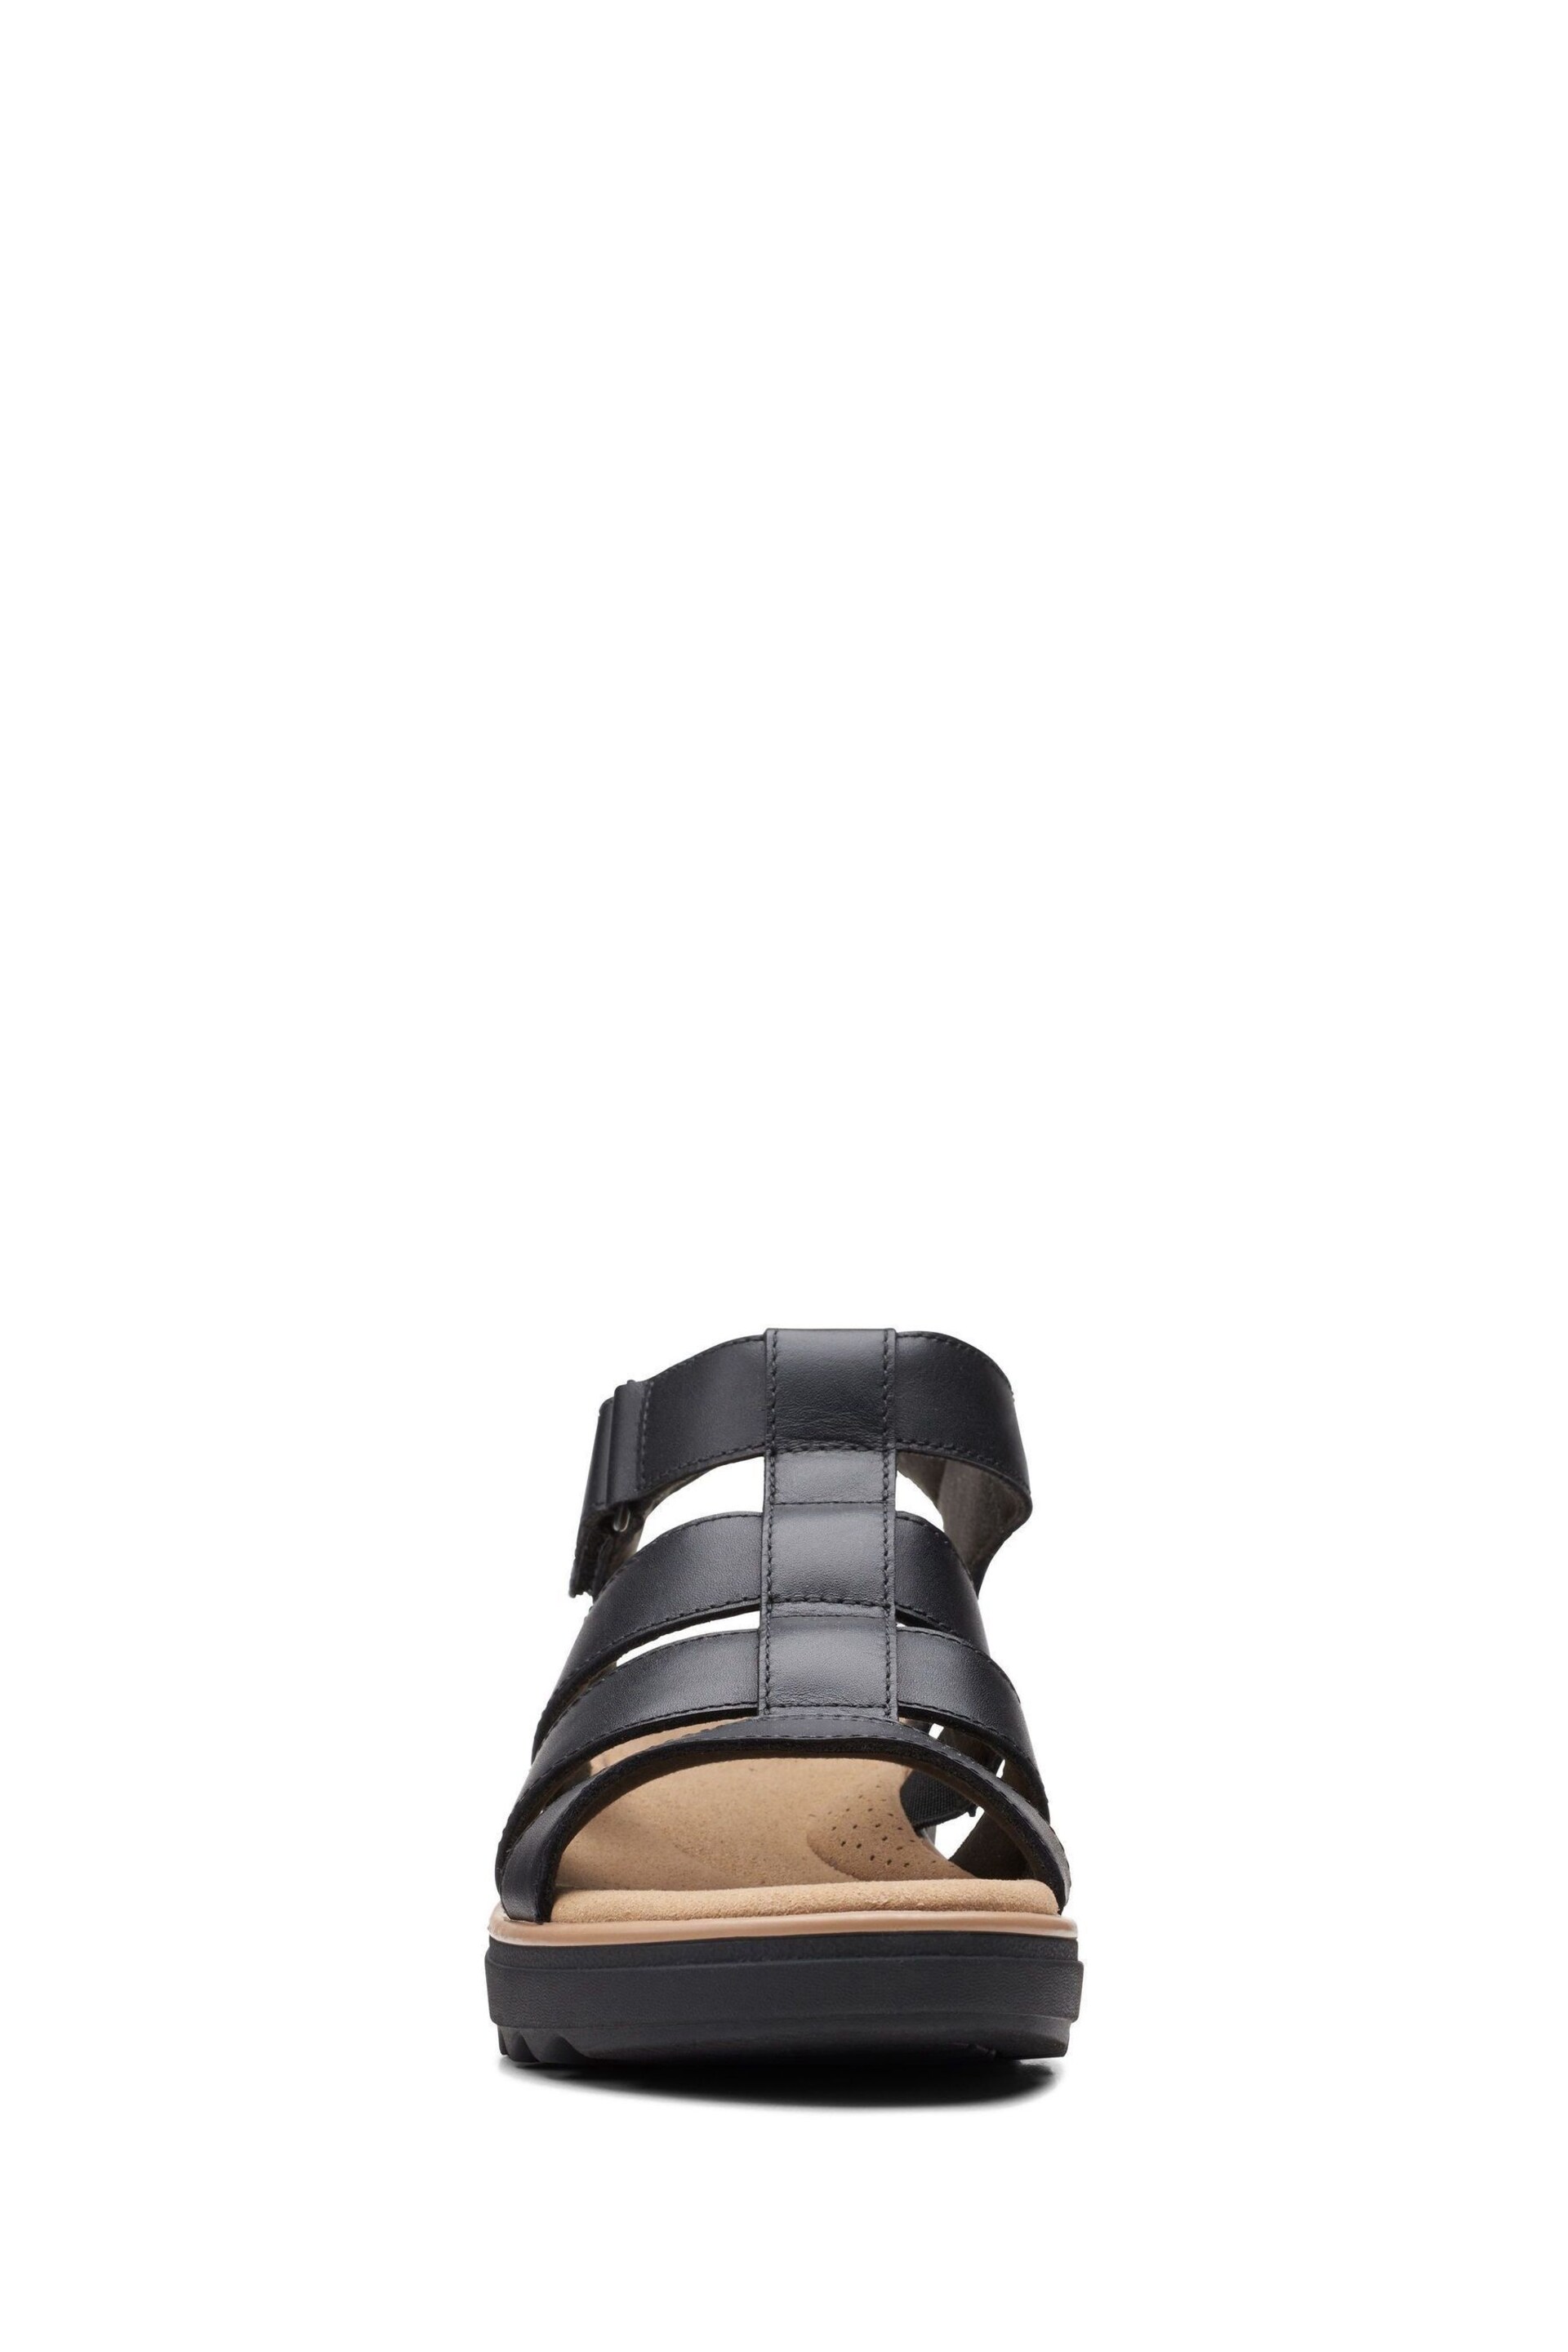 Clarks Black Leather Jillian Quartz Sandals - Image 5 of 7